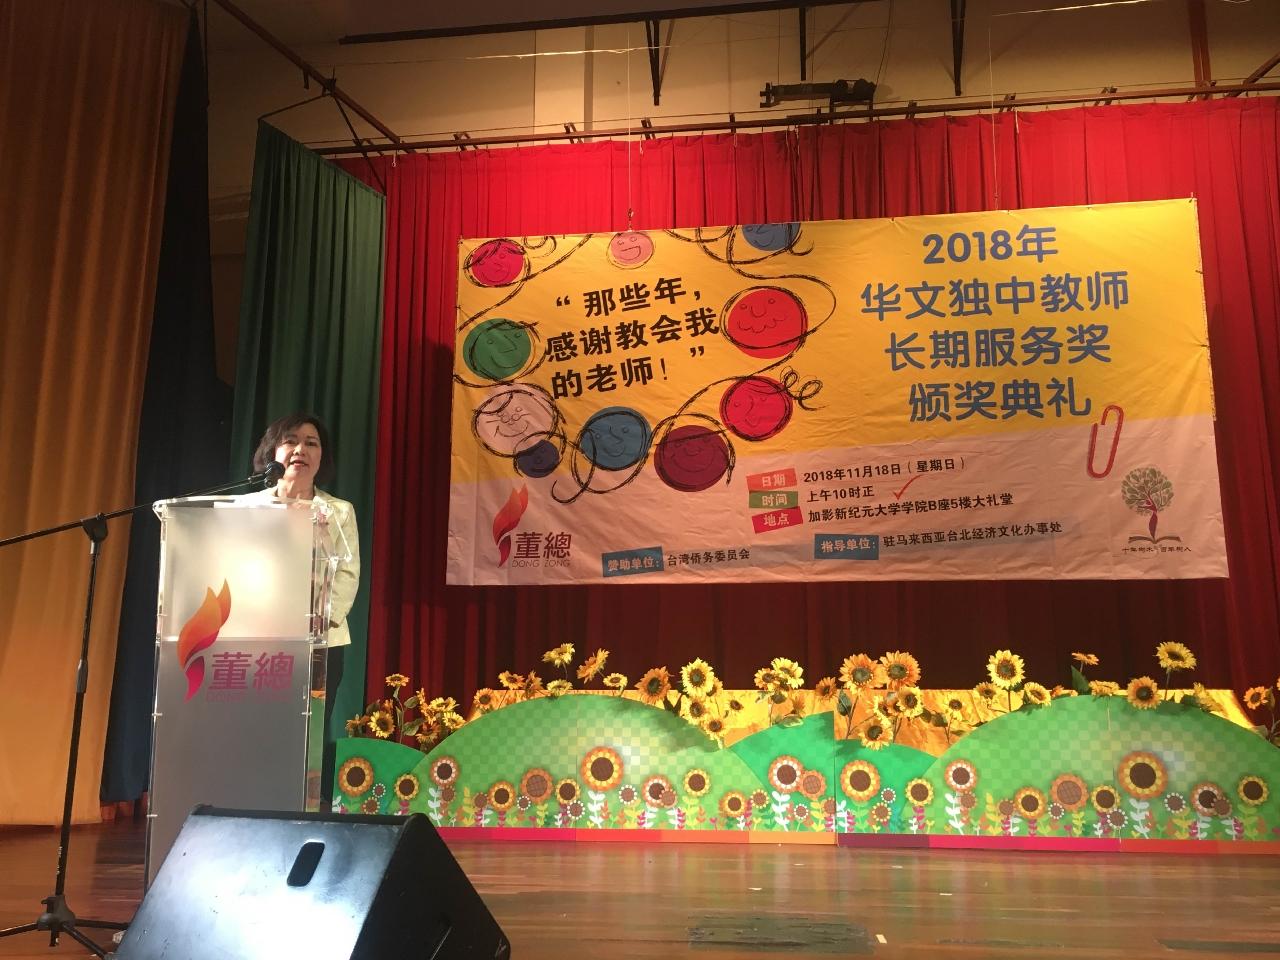 Wakil Anne Hung mempengerusikan untuk di "Anugerah Perkhidmatan Lama untuk Guru Sekolah Menengah Bebas China 2018".

